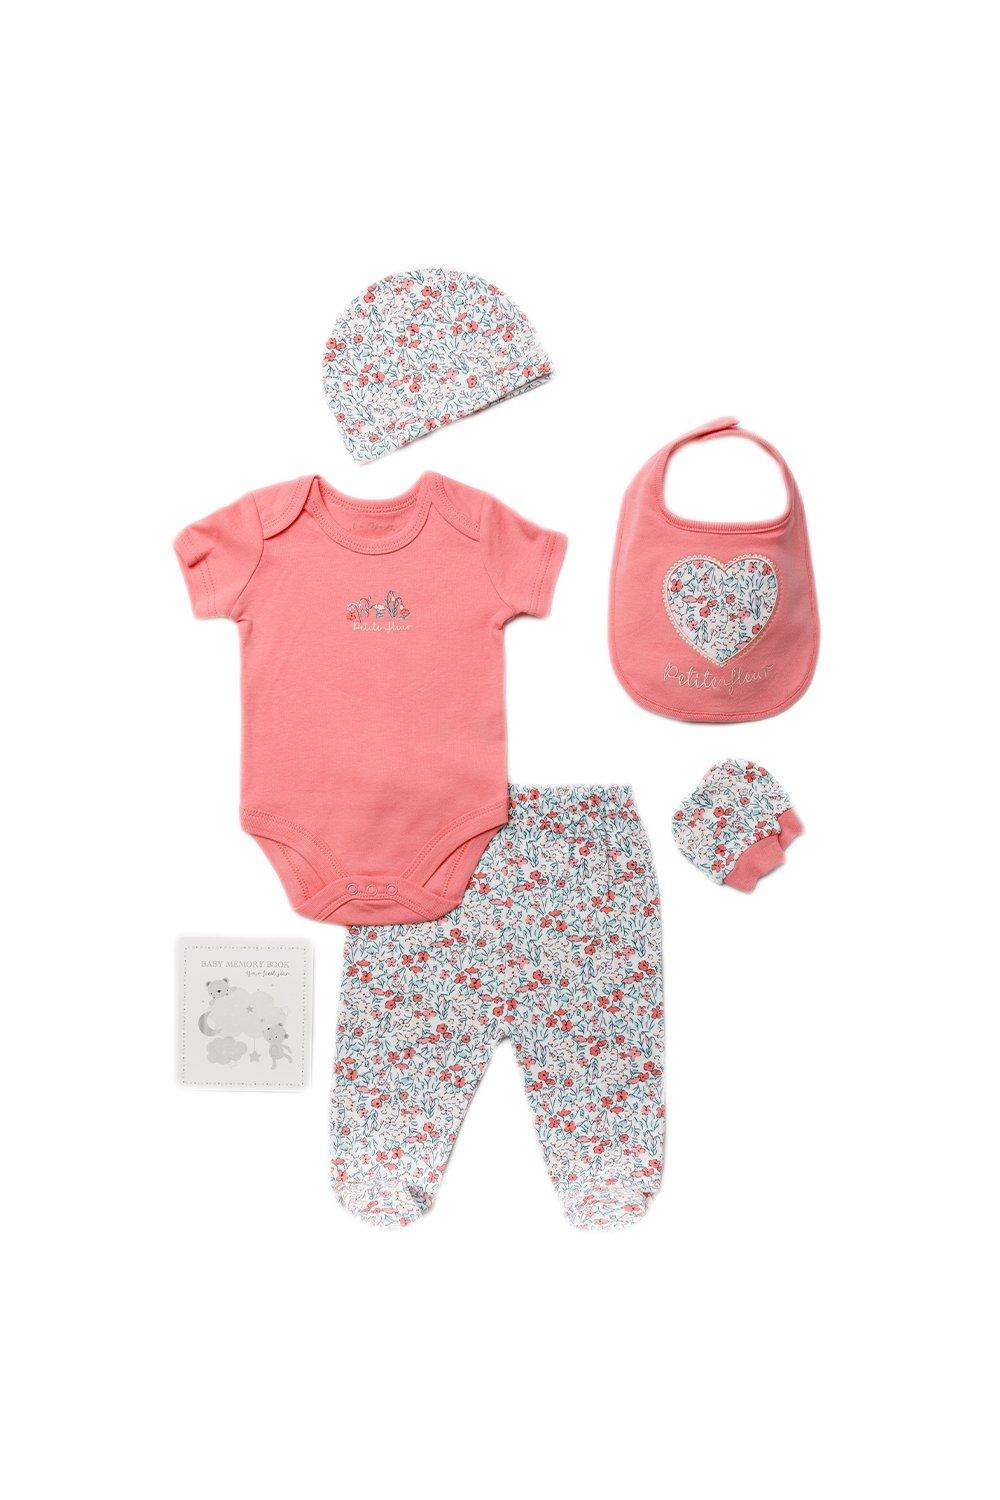 Хлопковый подарочный набор из 6 предметов с цветочным принтом для ребенка Rock a Bye Baby, розовый боди и митенки ellis l